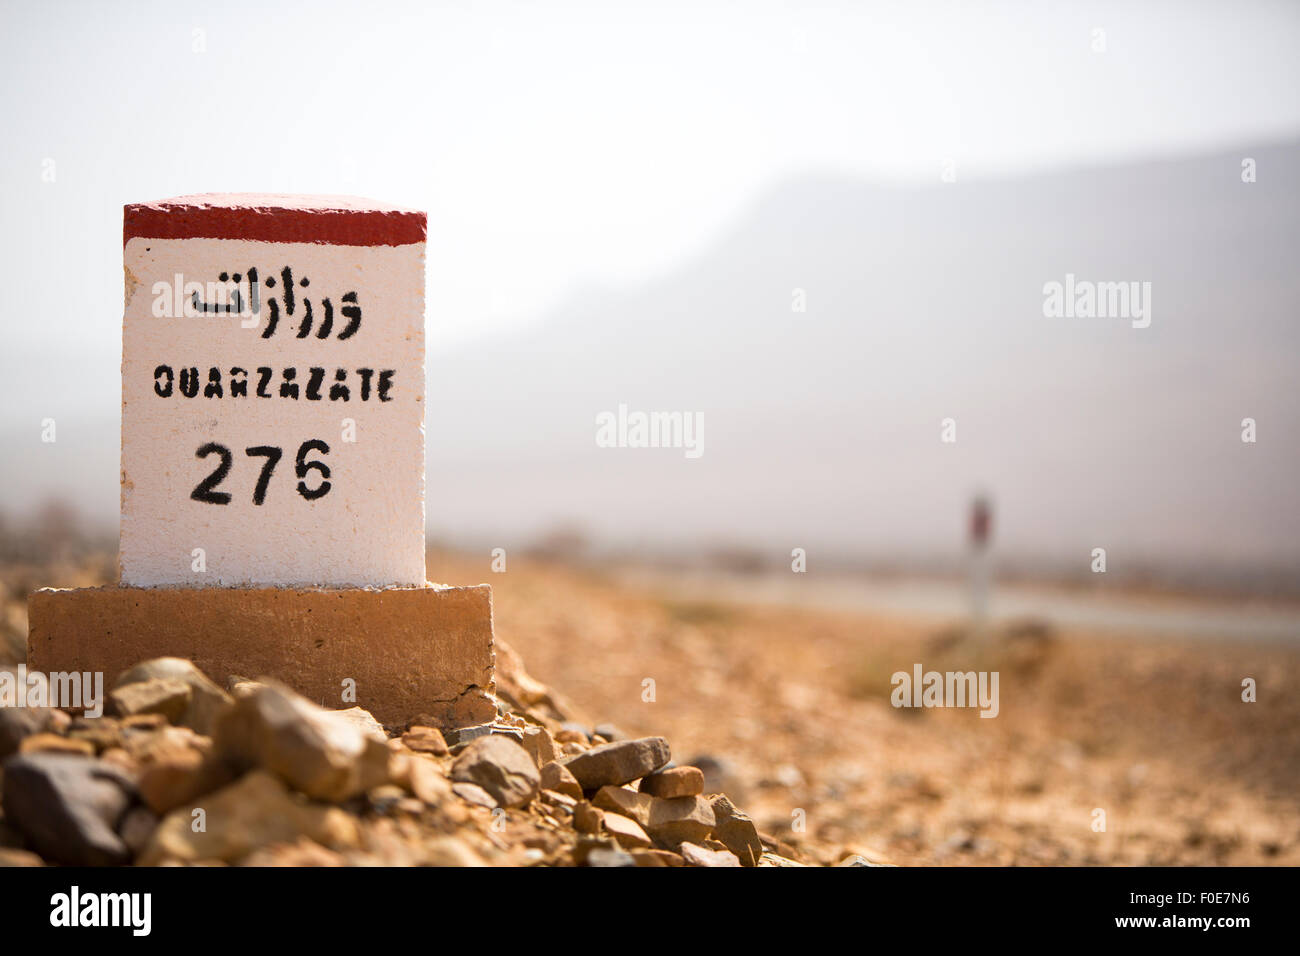 Ouarzazate 276 chilometri - strada segno indicatore di distanza sulla strada di Ouarzazate con sfondo sfocato, Marocco Foto Stock